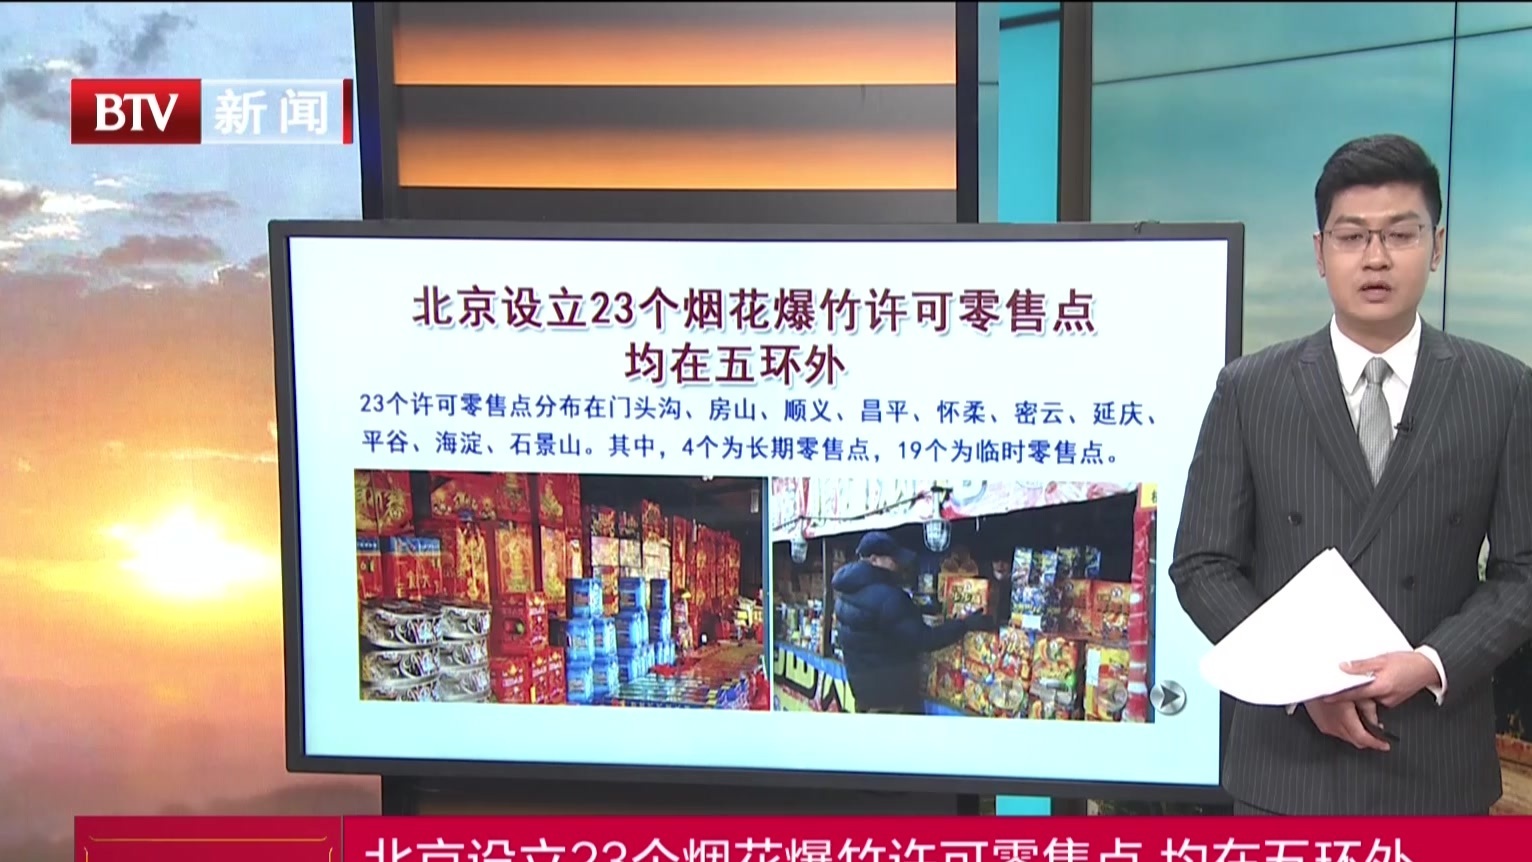 北京设立23个烟花爆竹许可零售点 均在五环外